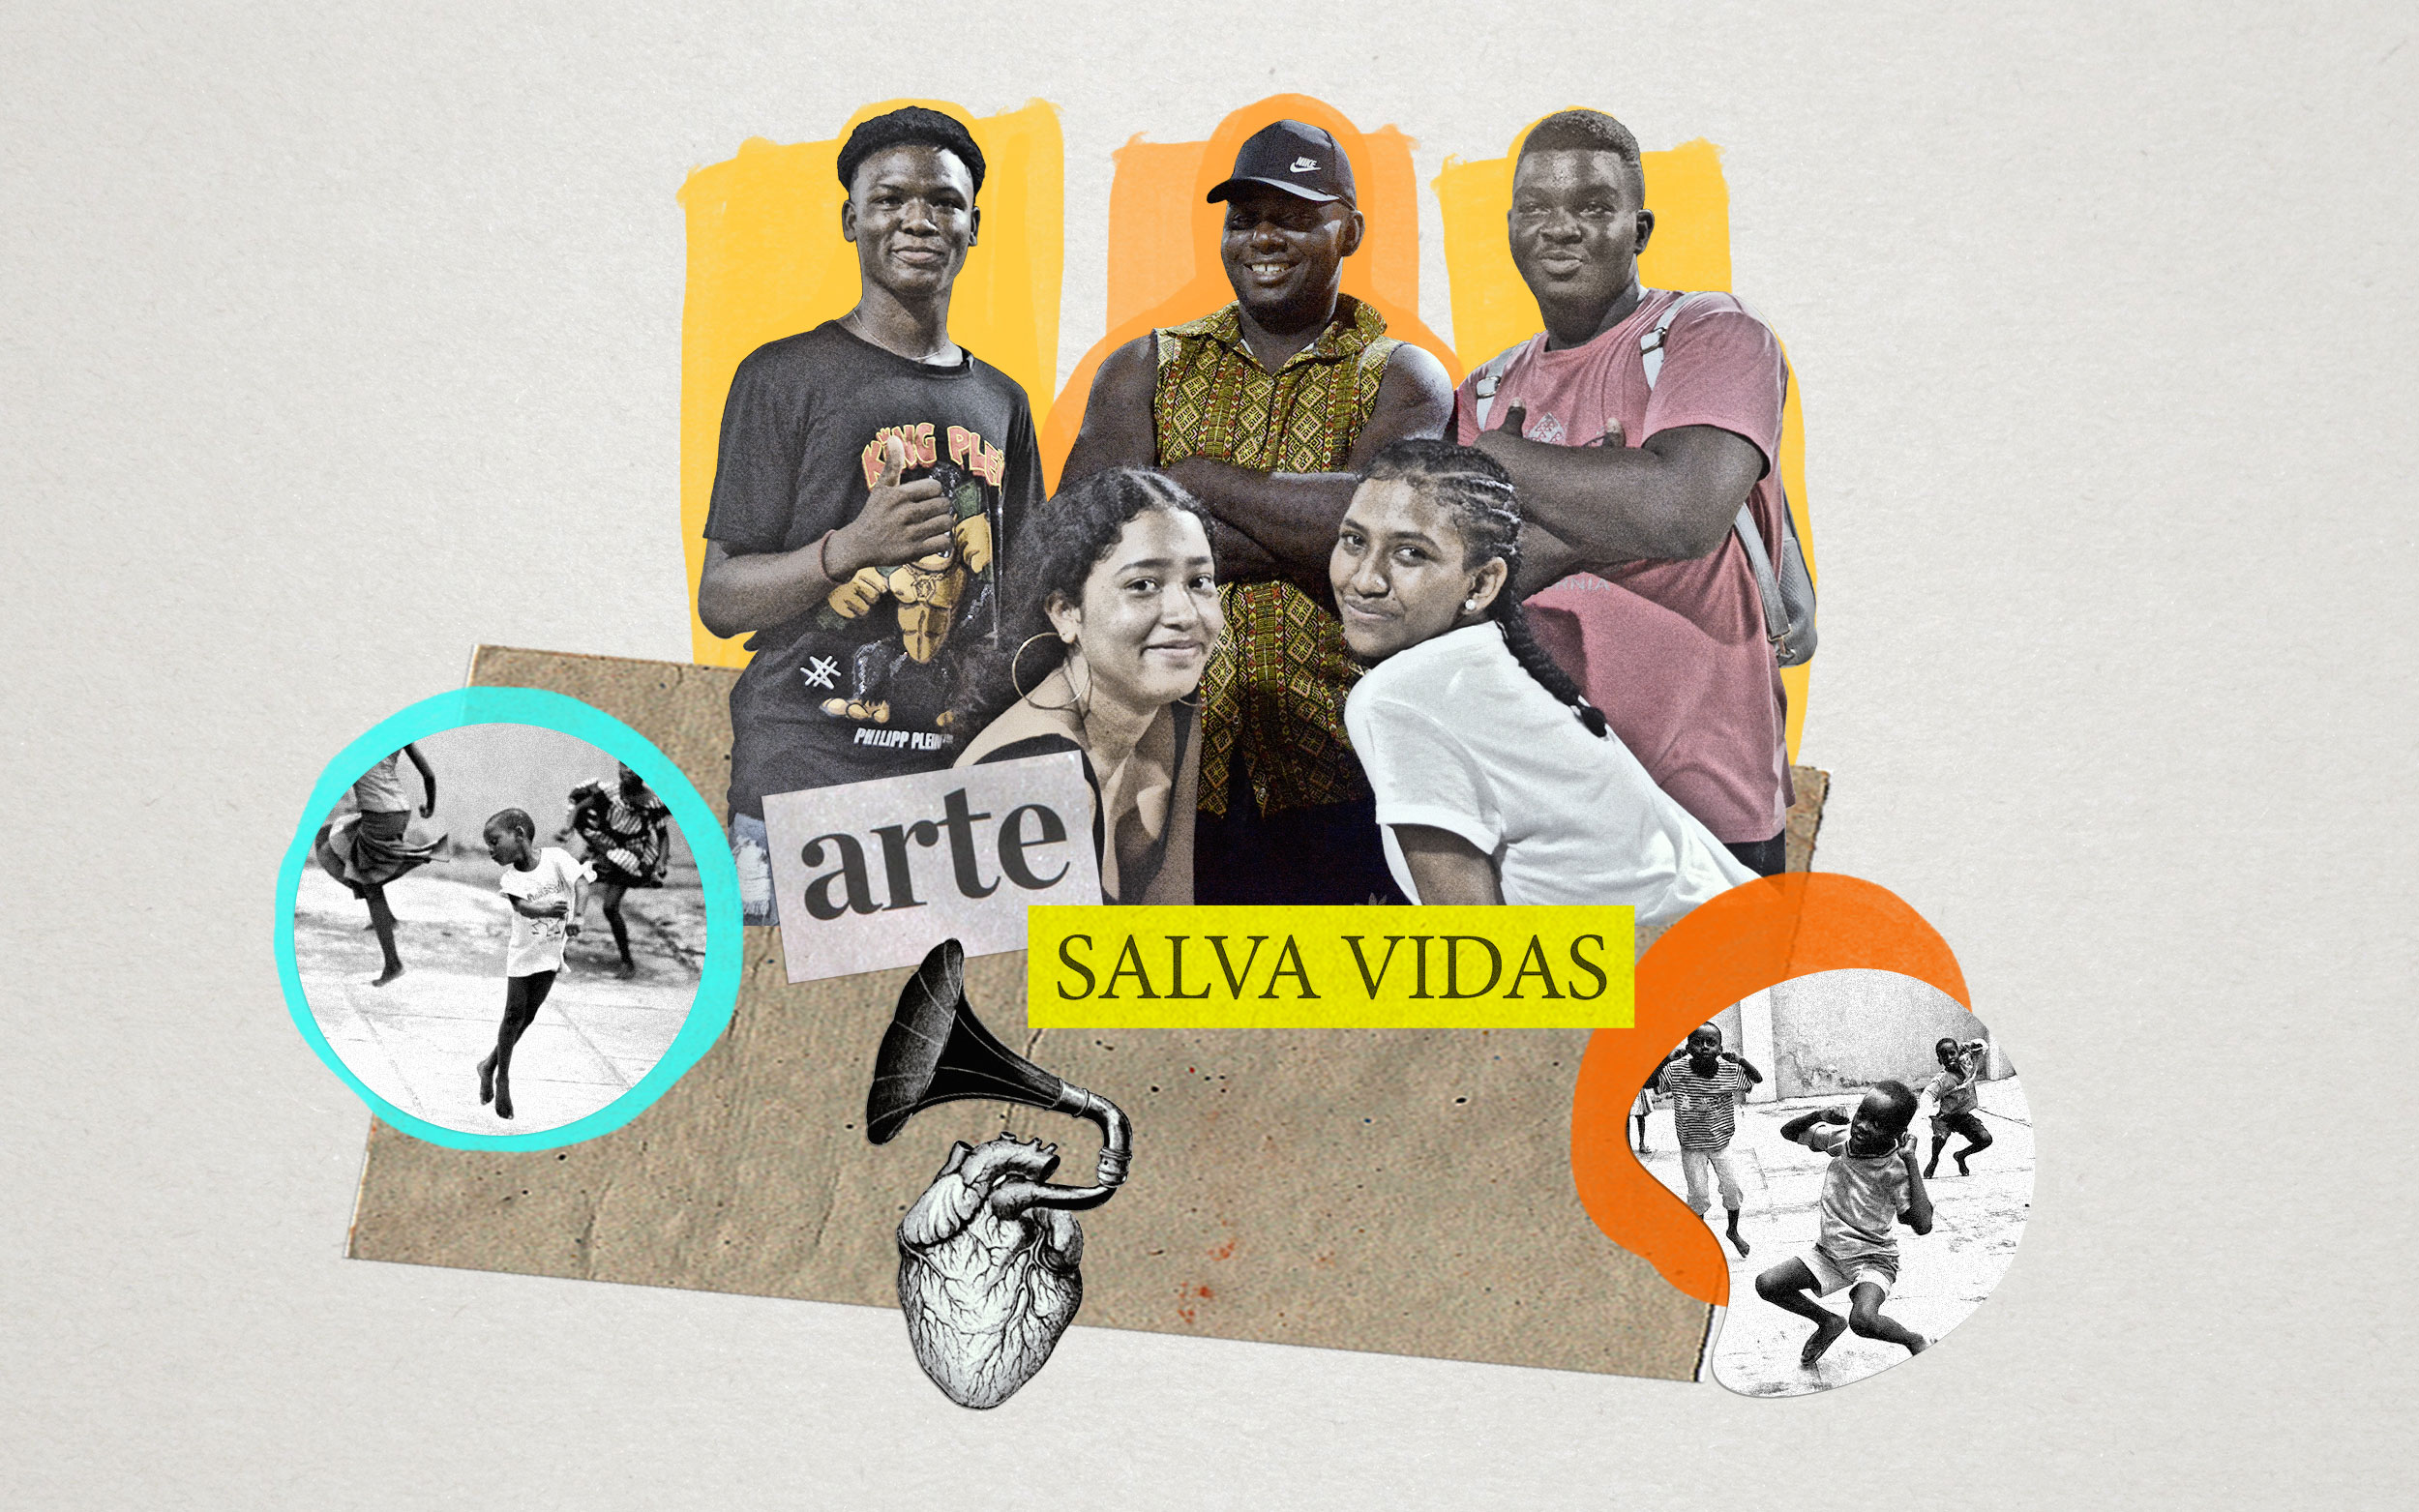 Collage de tres hombres y dos mujeres, letrero arte y salva vidas, niños bailando, dibujo de corazón del cual sale un gramófono